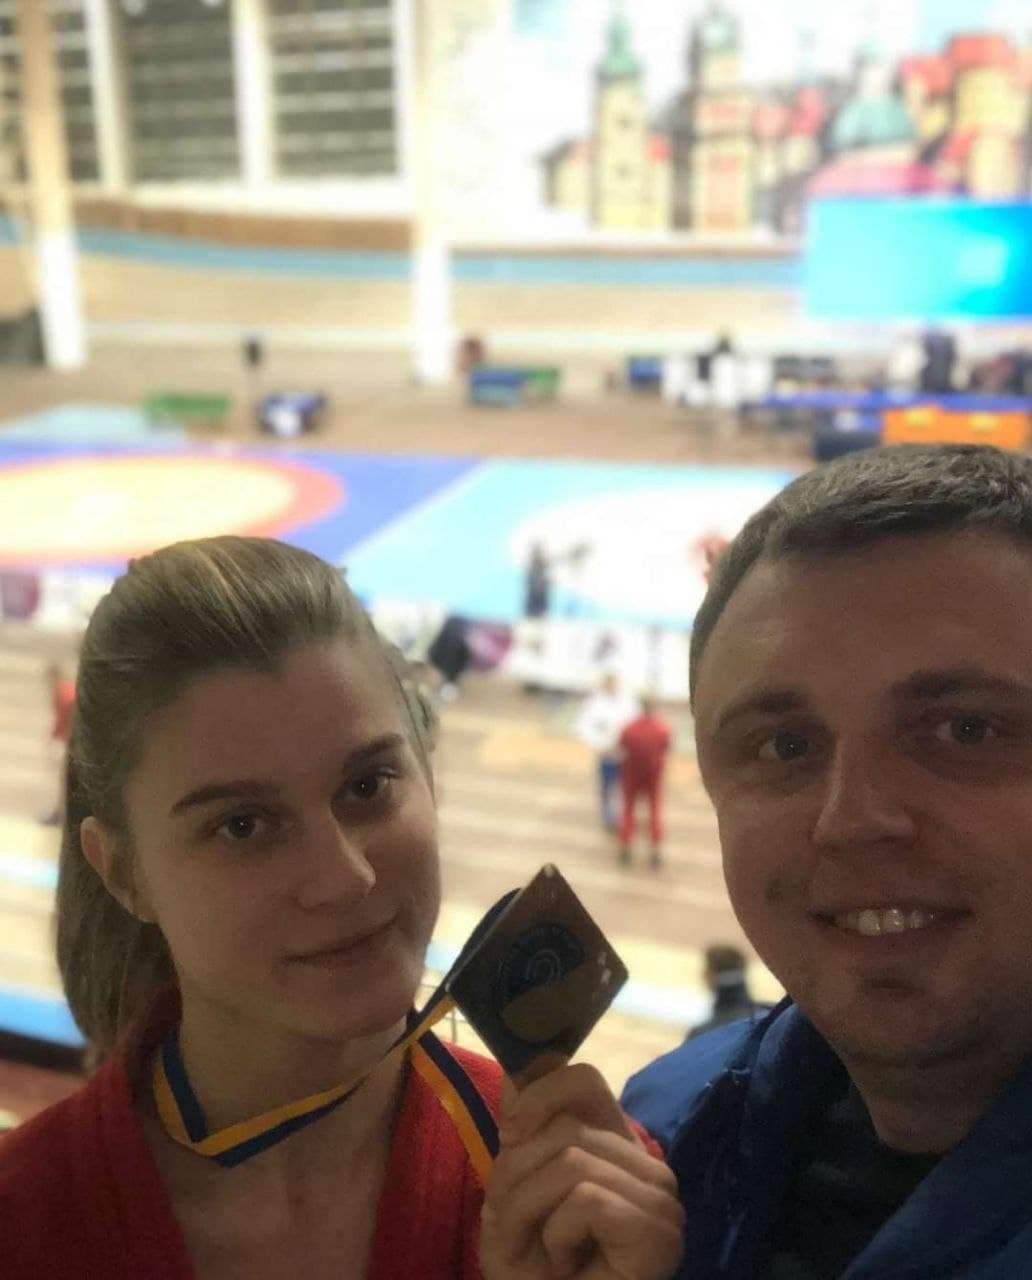 Спортсменка з Вишневого завоювала срібло на чемпіонаті України із самбо - зображення